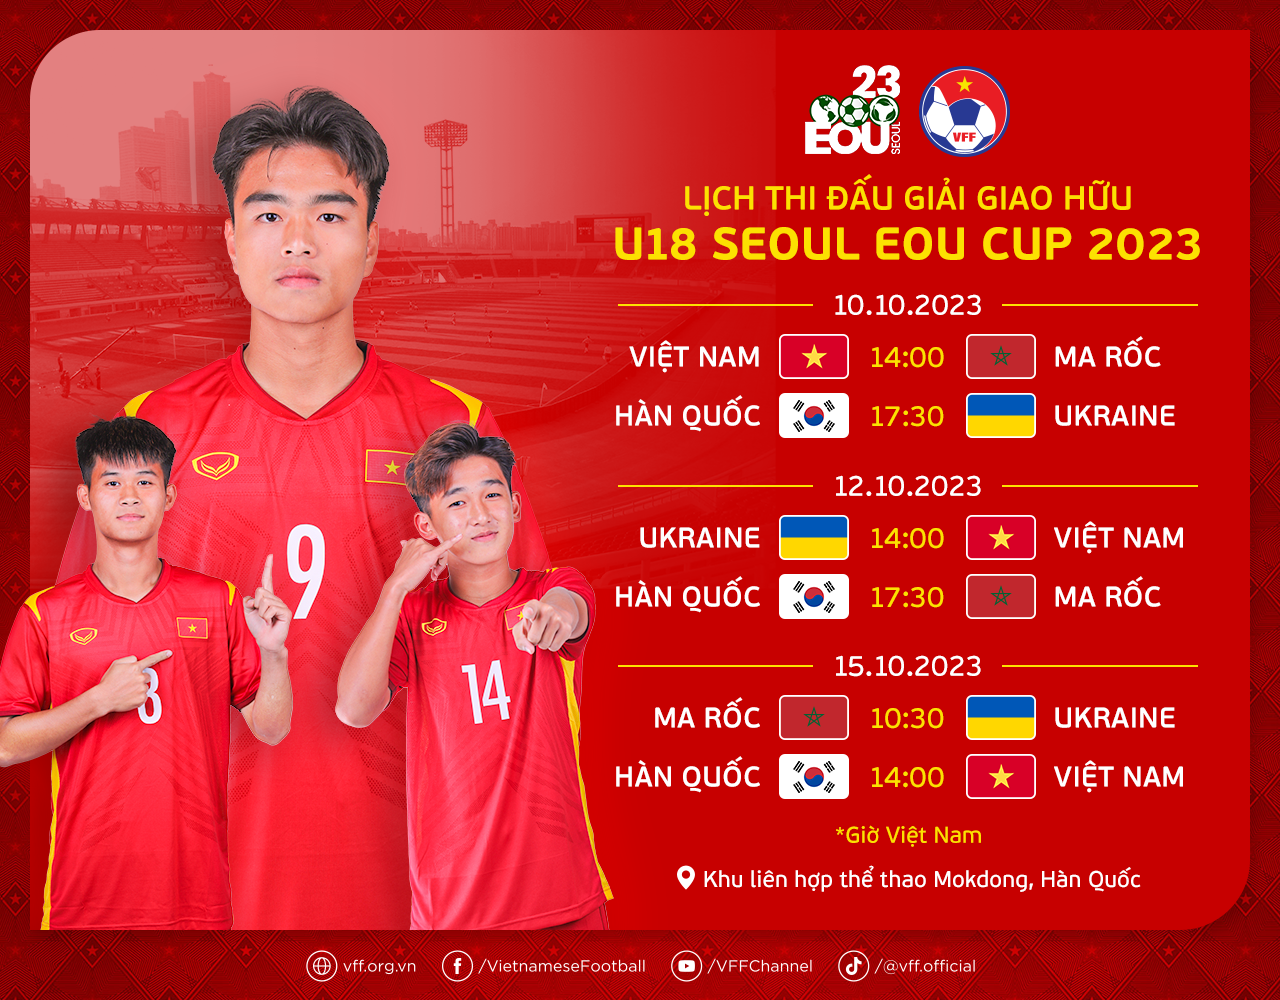 HLV Hoàng Anh Tuấn dẫn quân lên đường đấu U18 Hàn Quốc, Ukraine - Bóng Đá